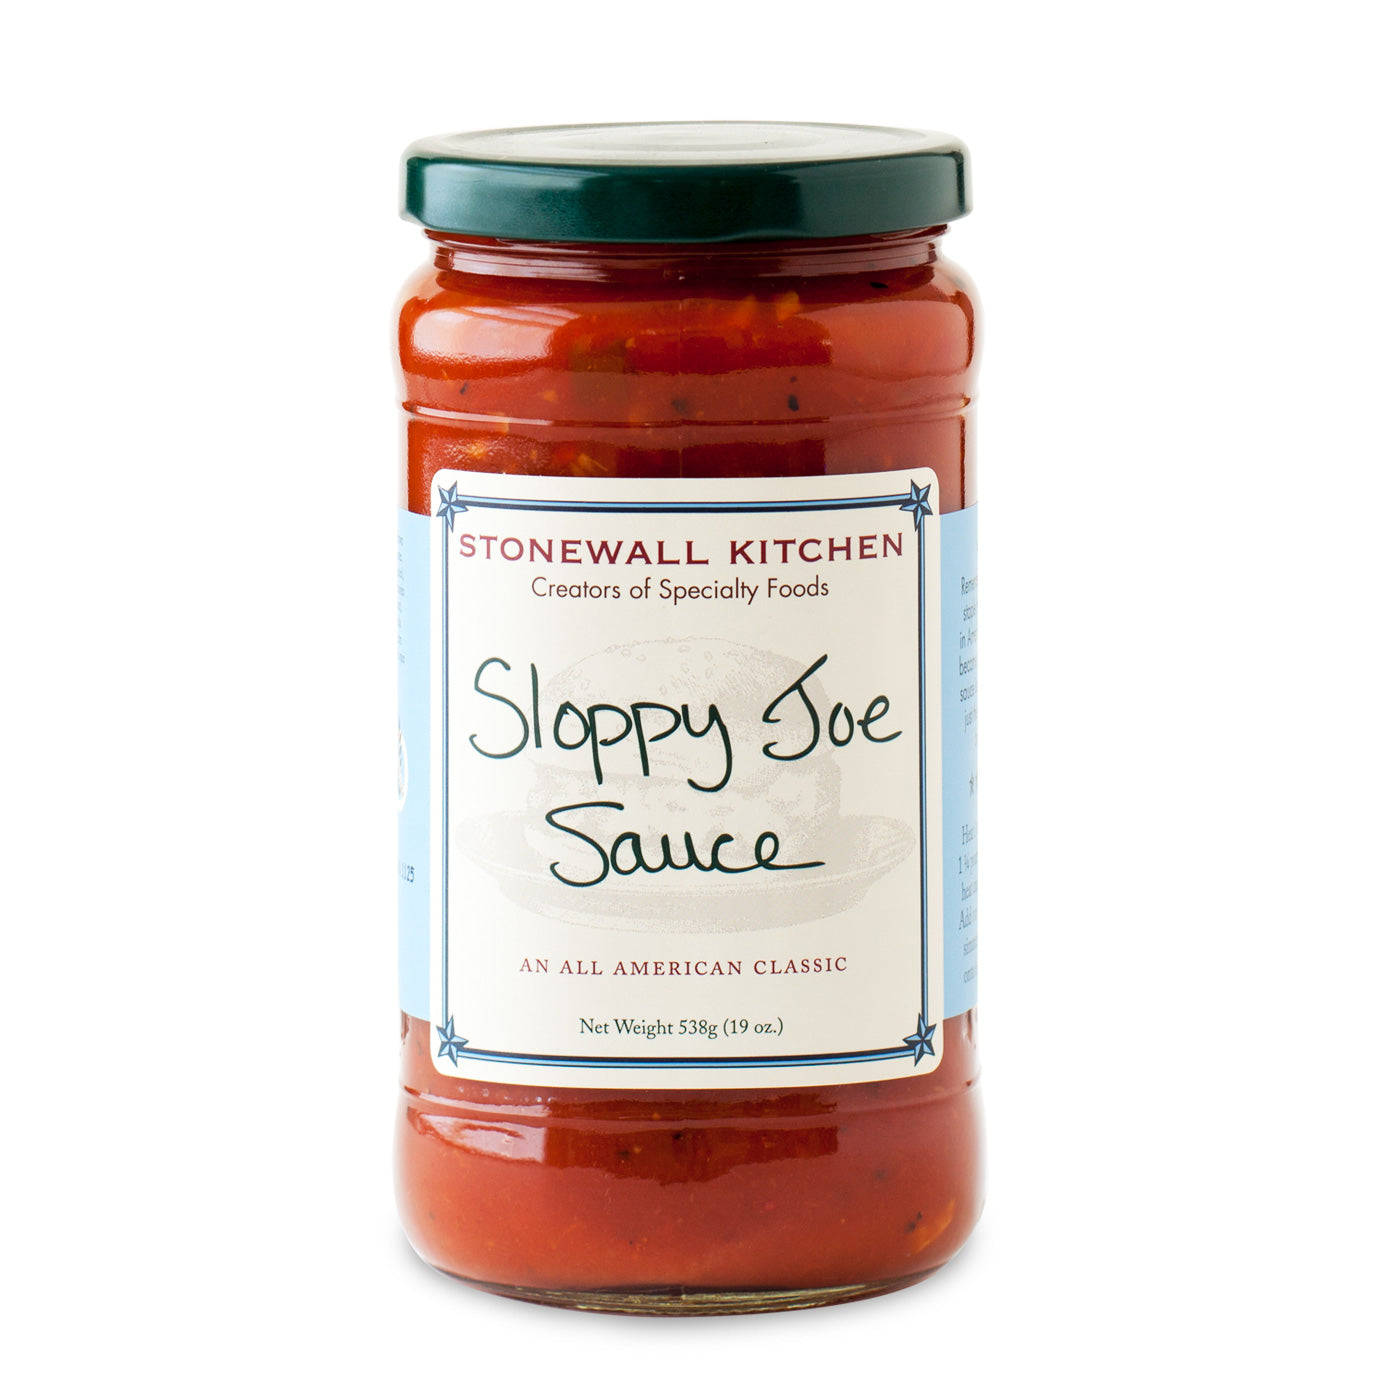 Stonewall Kitchen Sloppy Joe Sauce Jar 19 Oz. 538g Made In Maine